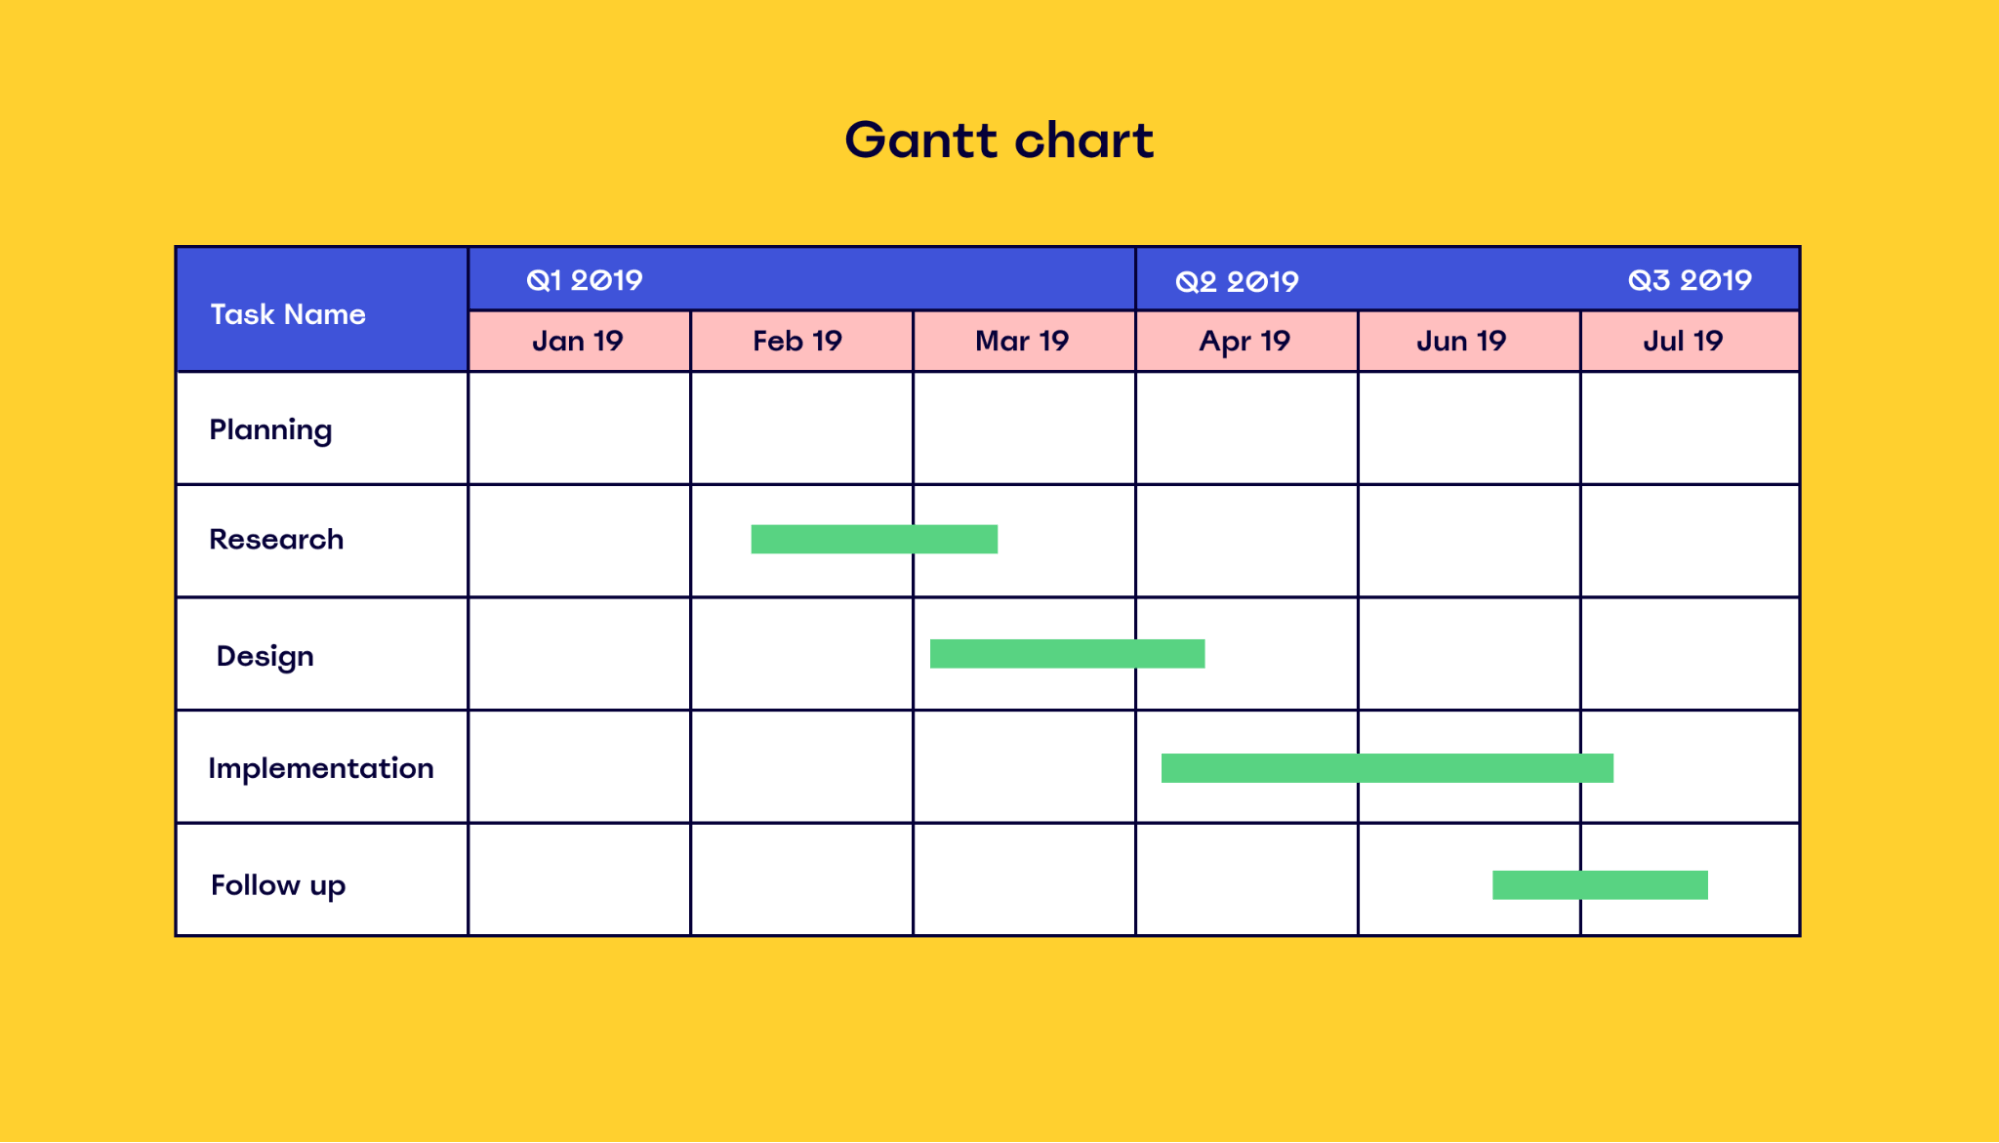 Example of a Gantt chart